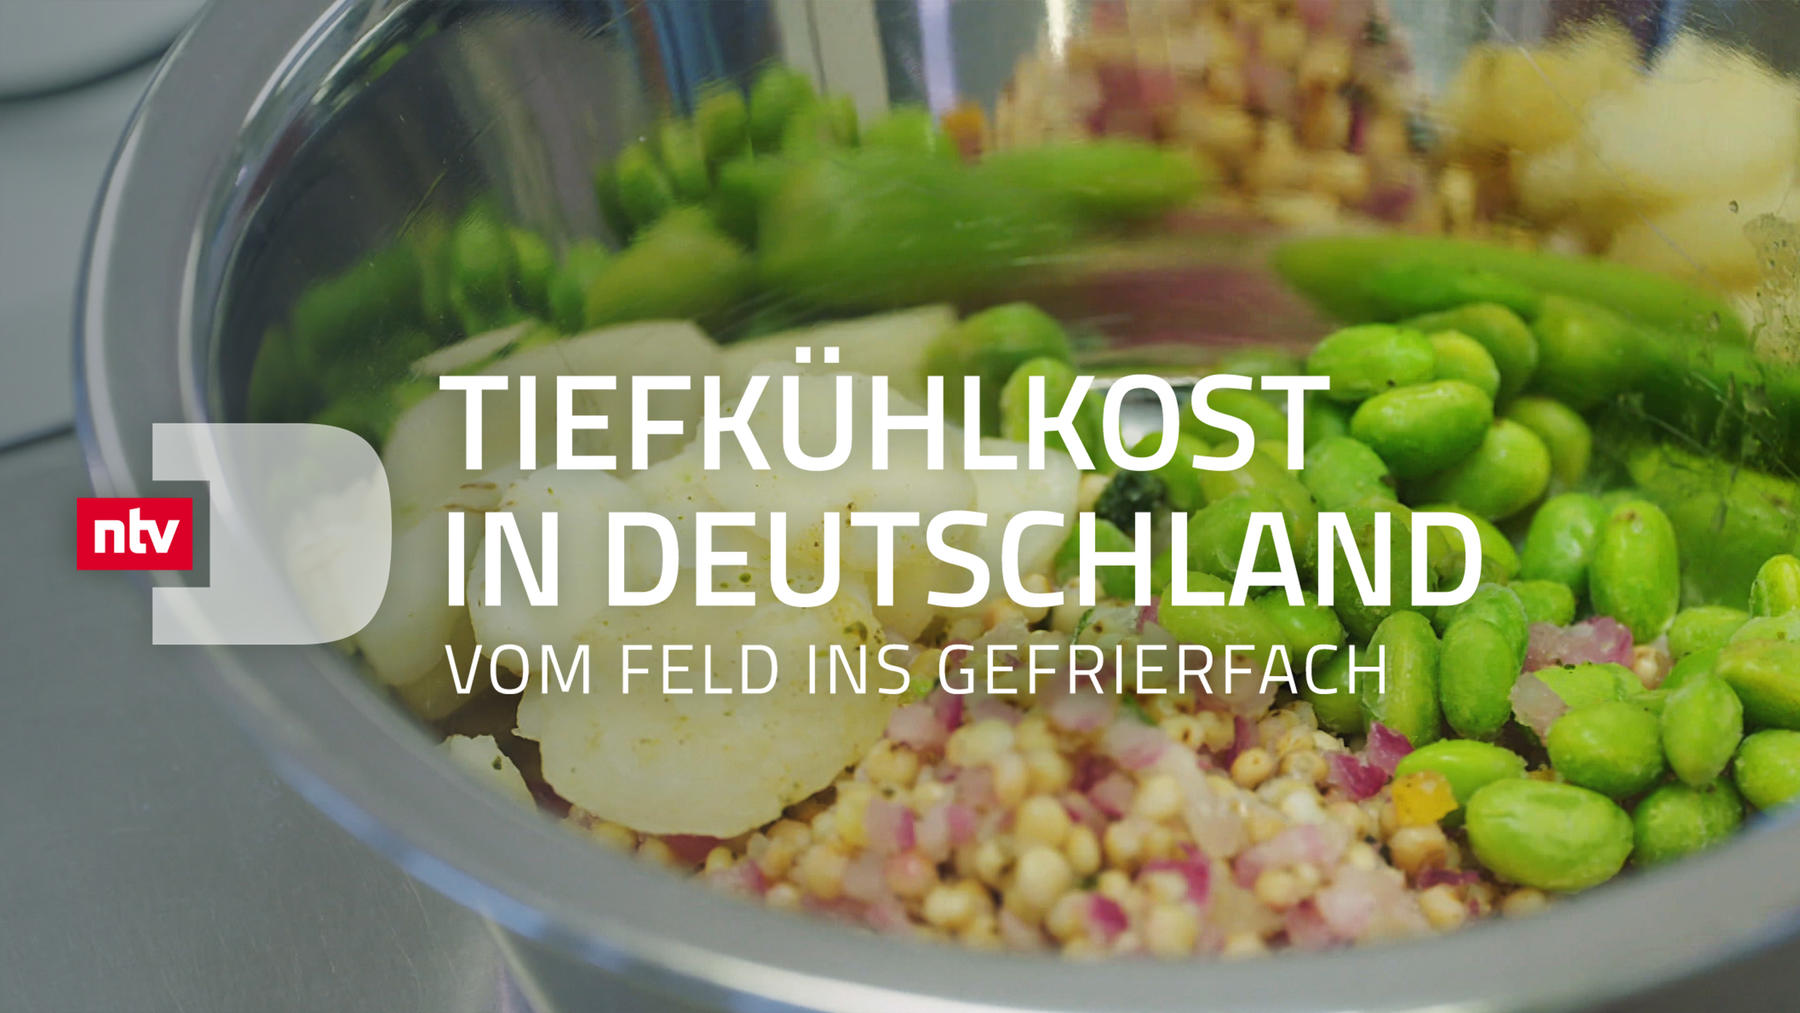 Tiefkühlkost in Deutschland - Vom Feld ins Gefrierfach